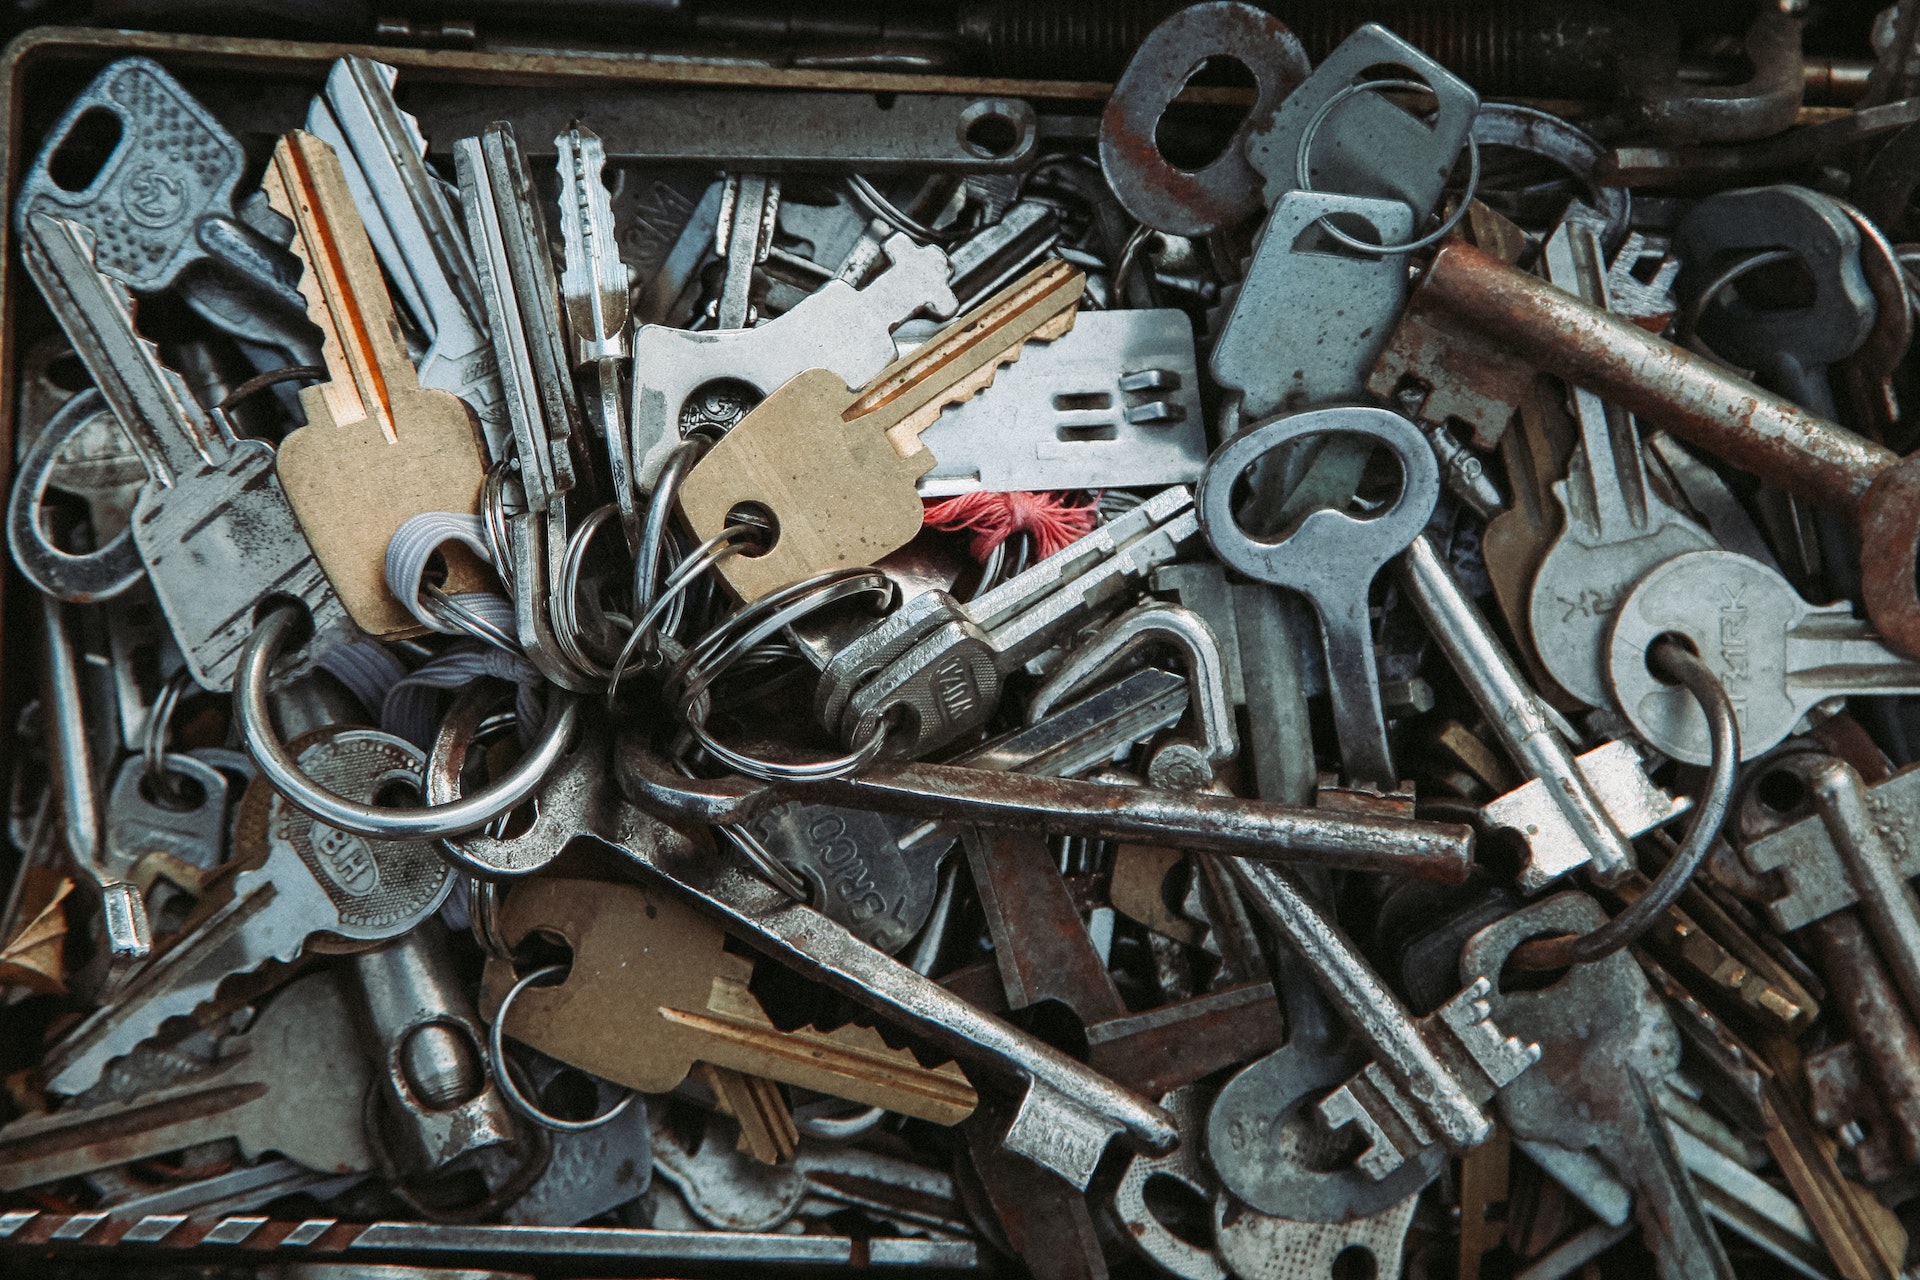 A drawer full of house keys